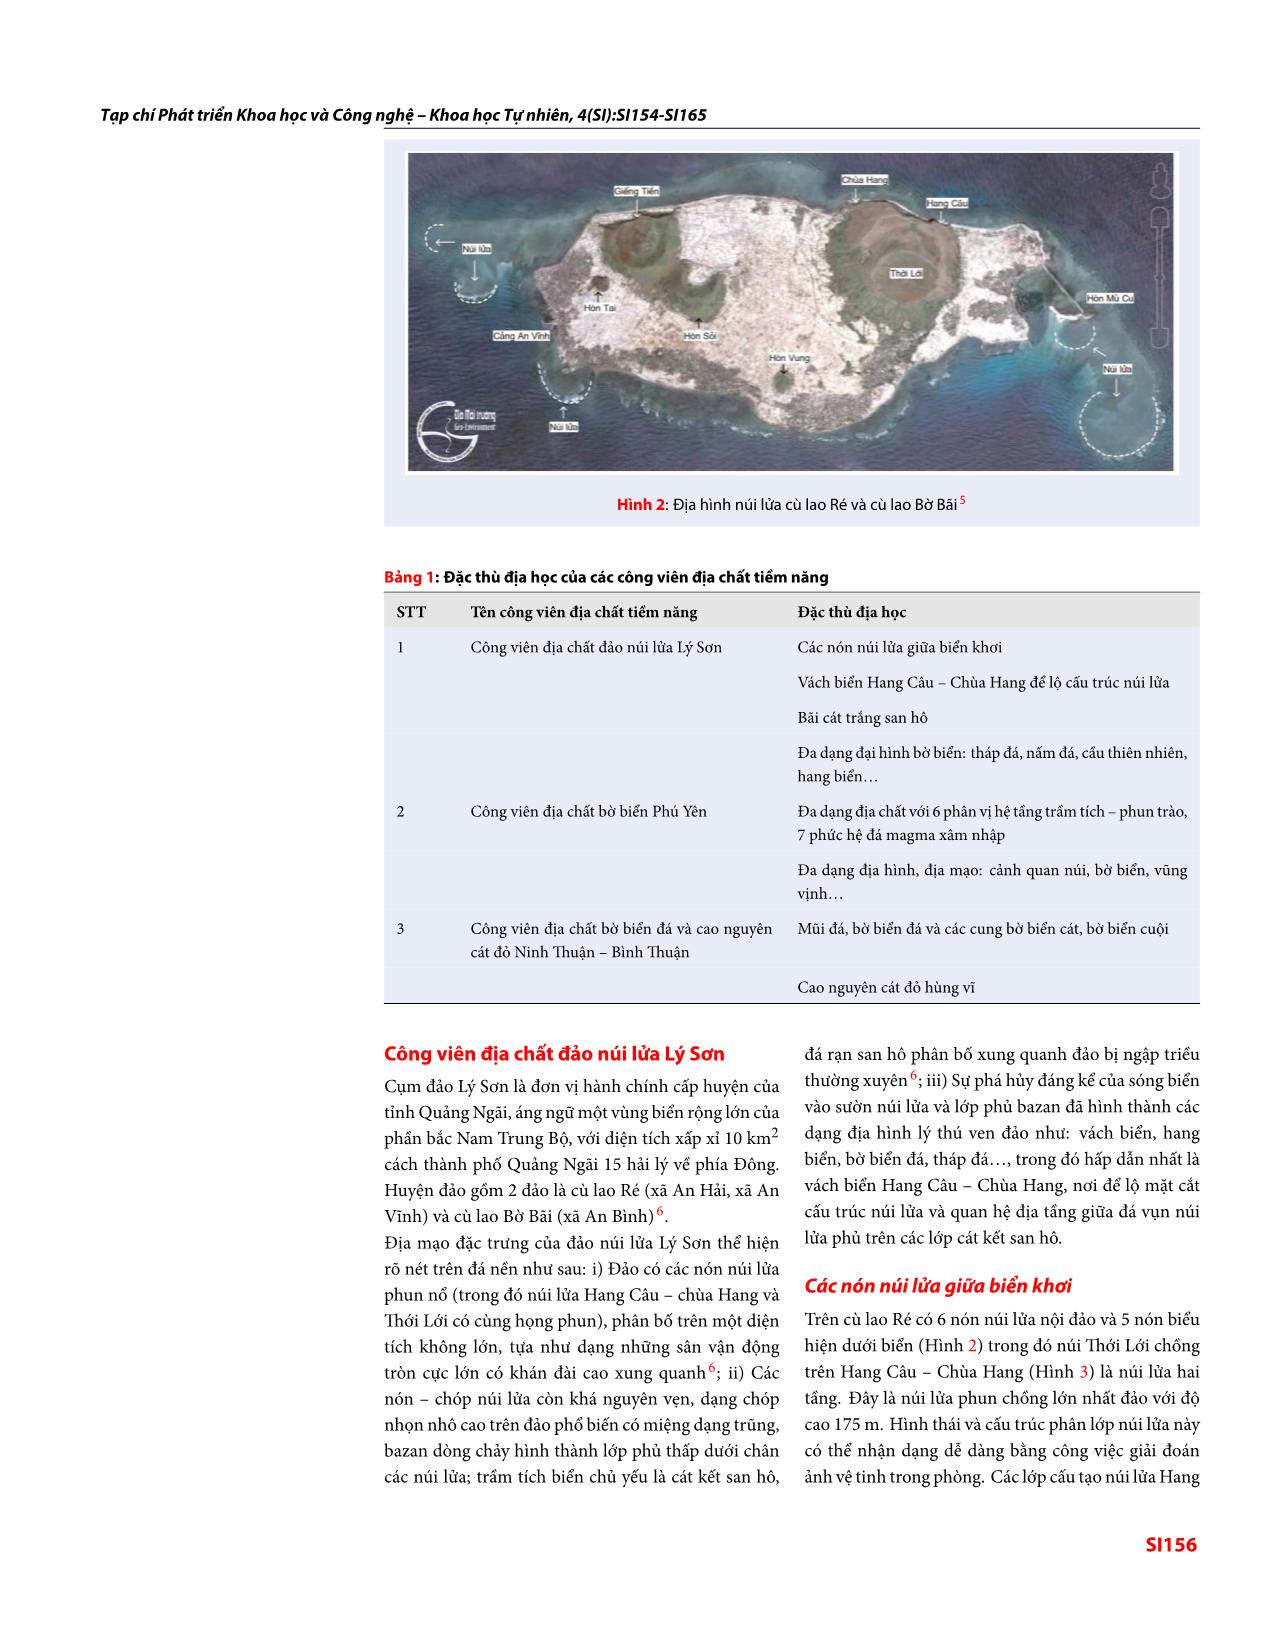 Đặc thù địa học tại các công viên địa chất tiềm năng thuộc dải ven biển Nam Trung bộ, Việt Nam trang 3